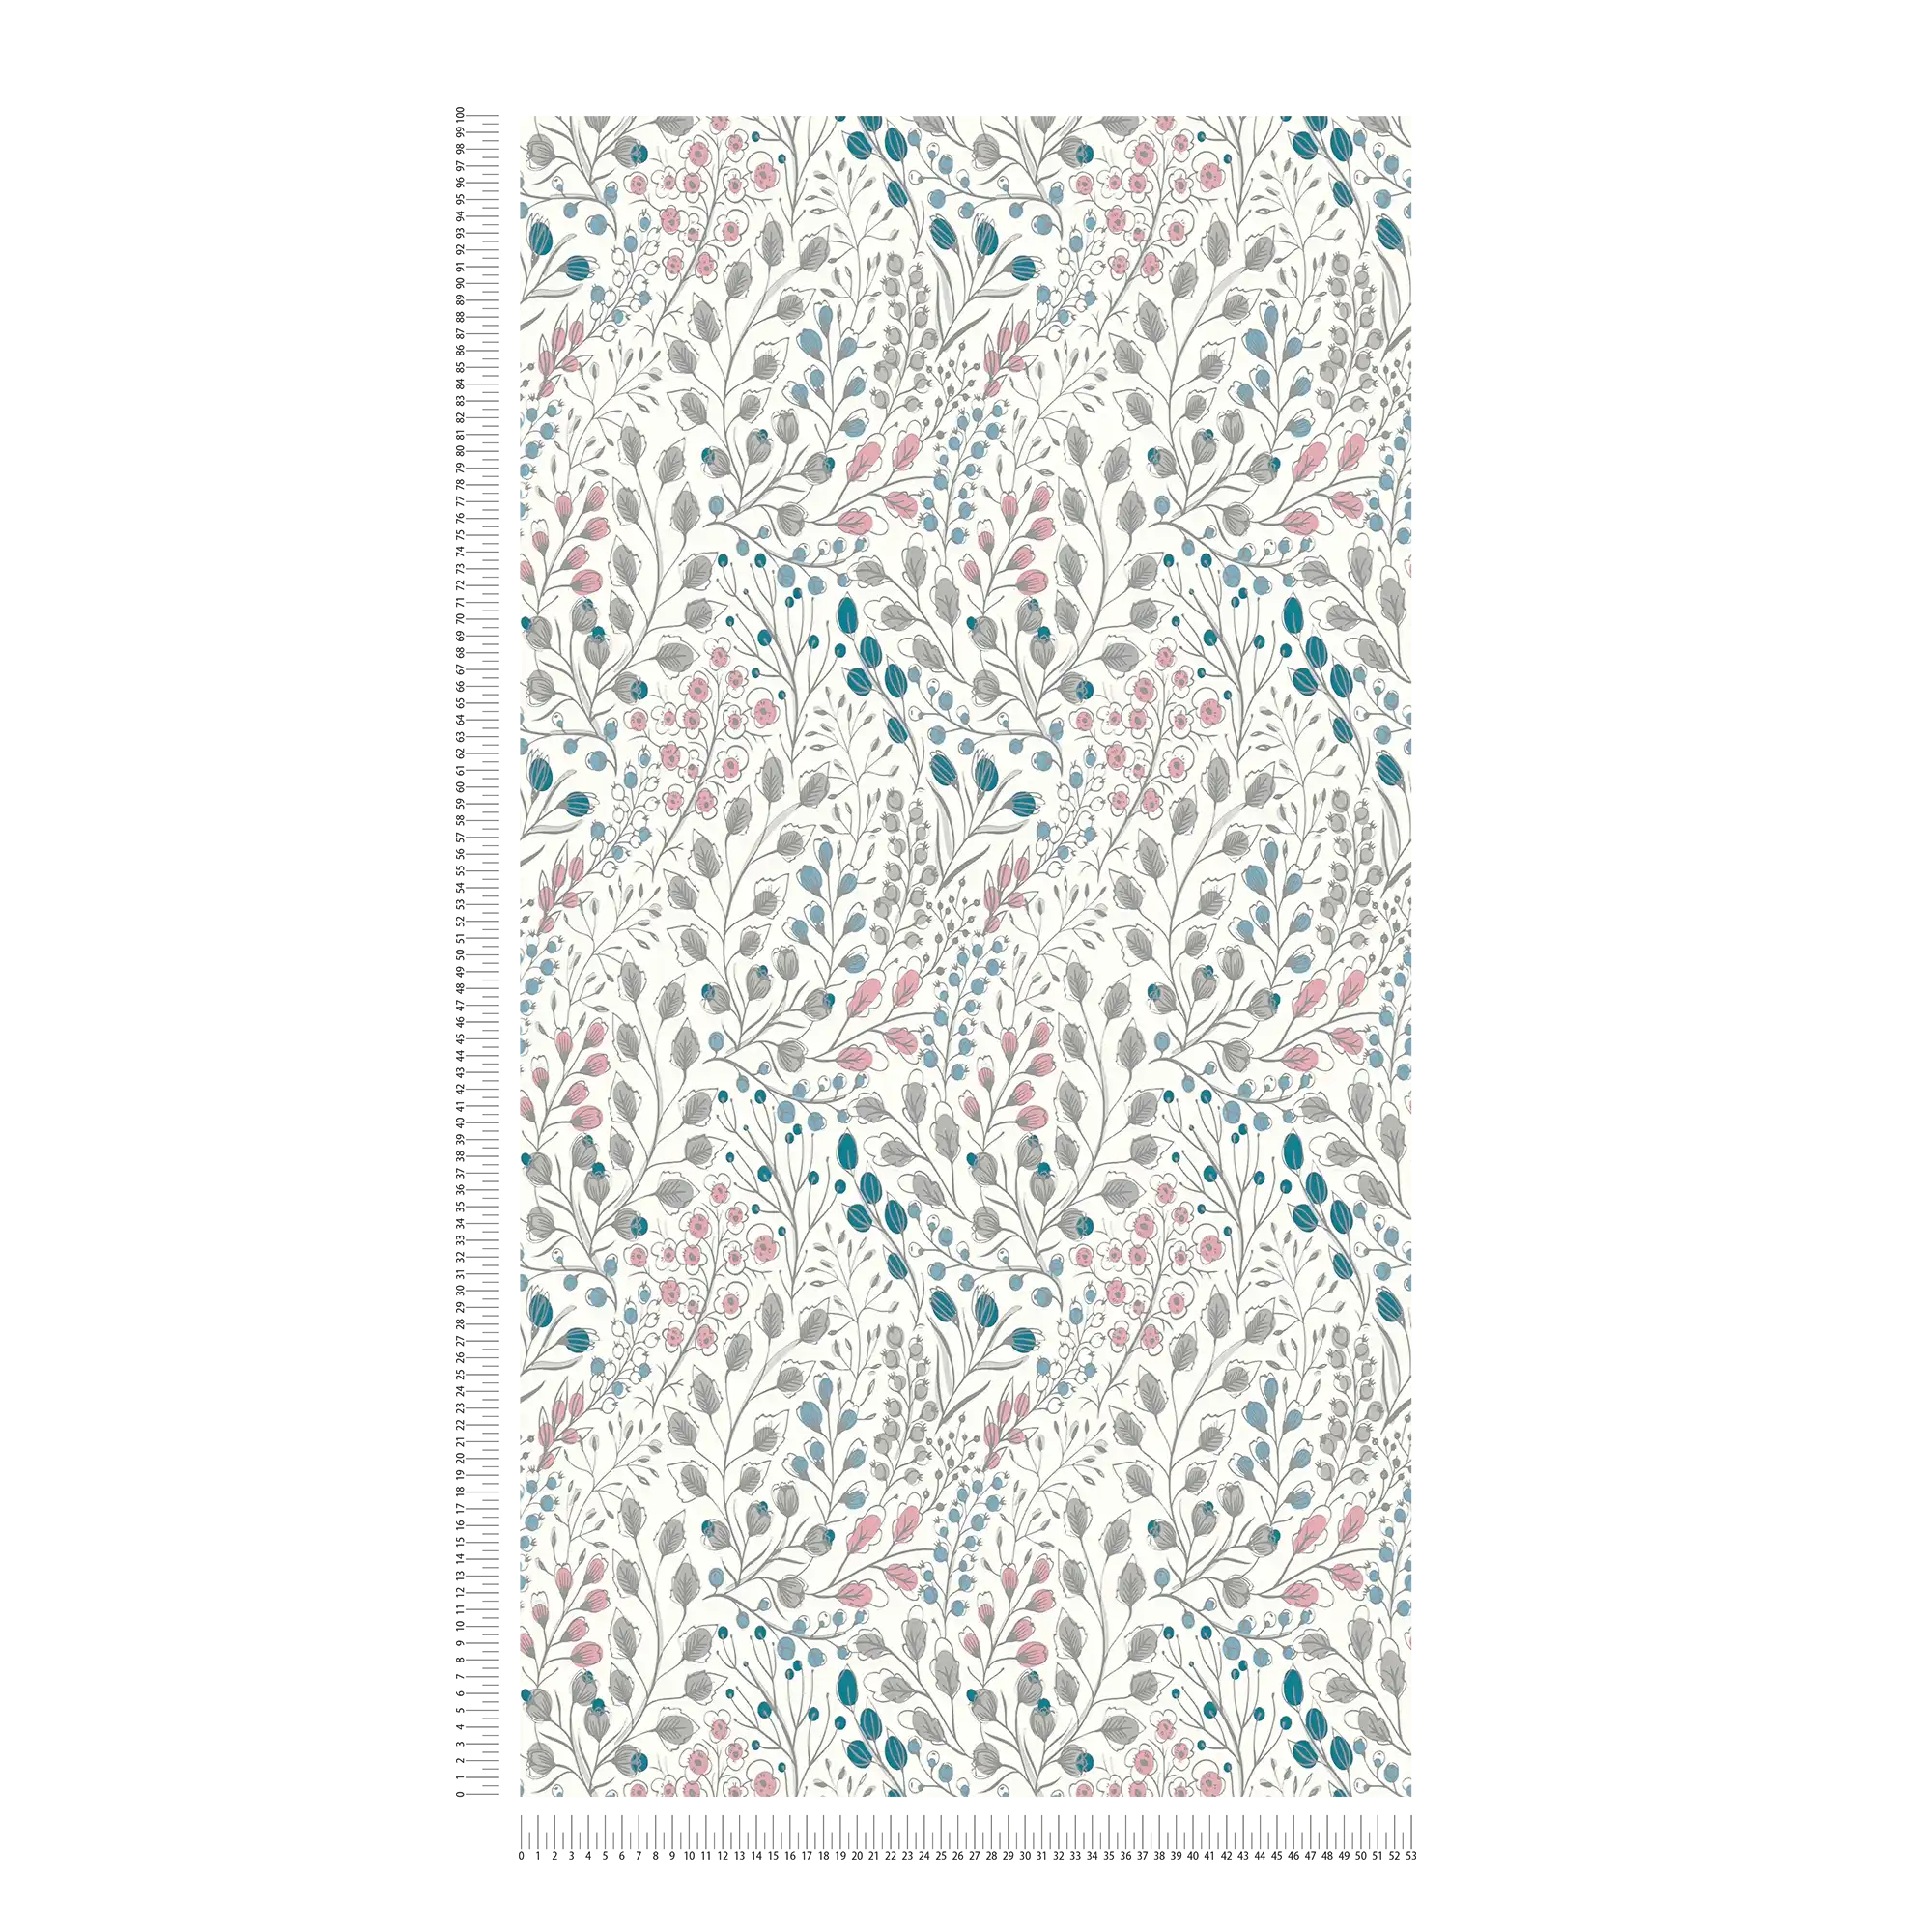             Carta da parati in tessuto non tessuto con motivi floreali in stile disegno - bianco, rosa, blu
        